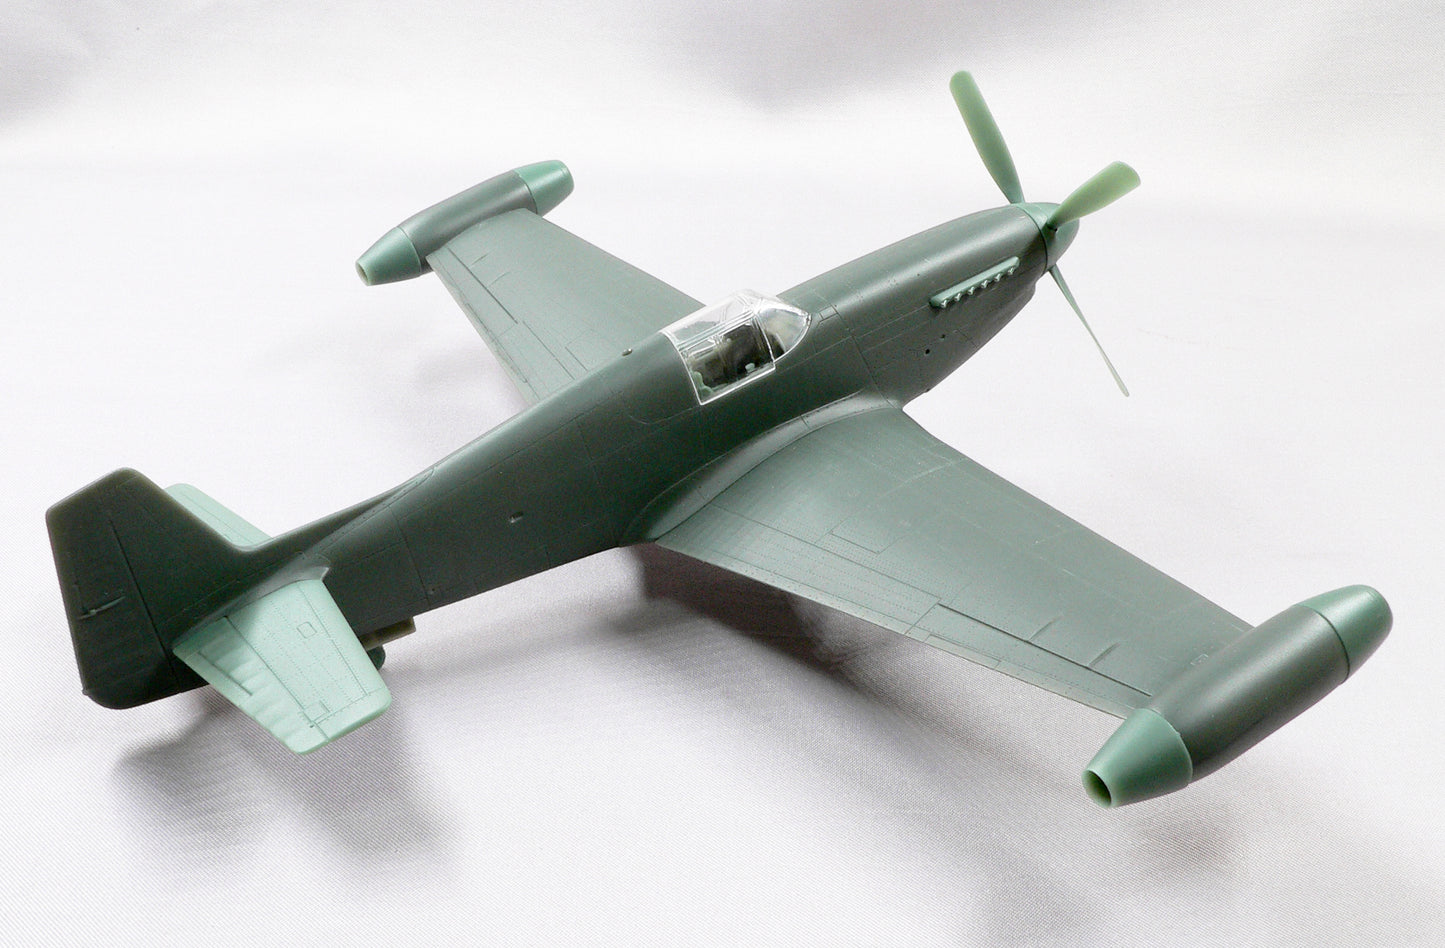 Mustang P-51C "Beguine" Halberd Models 1/48 scale